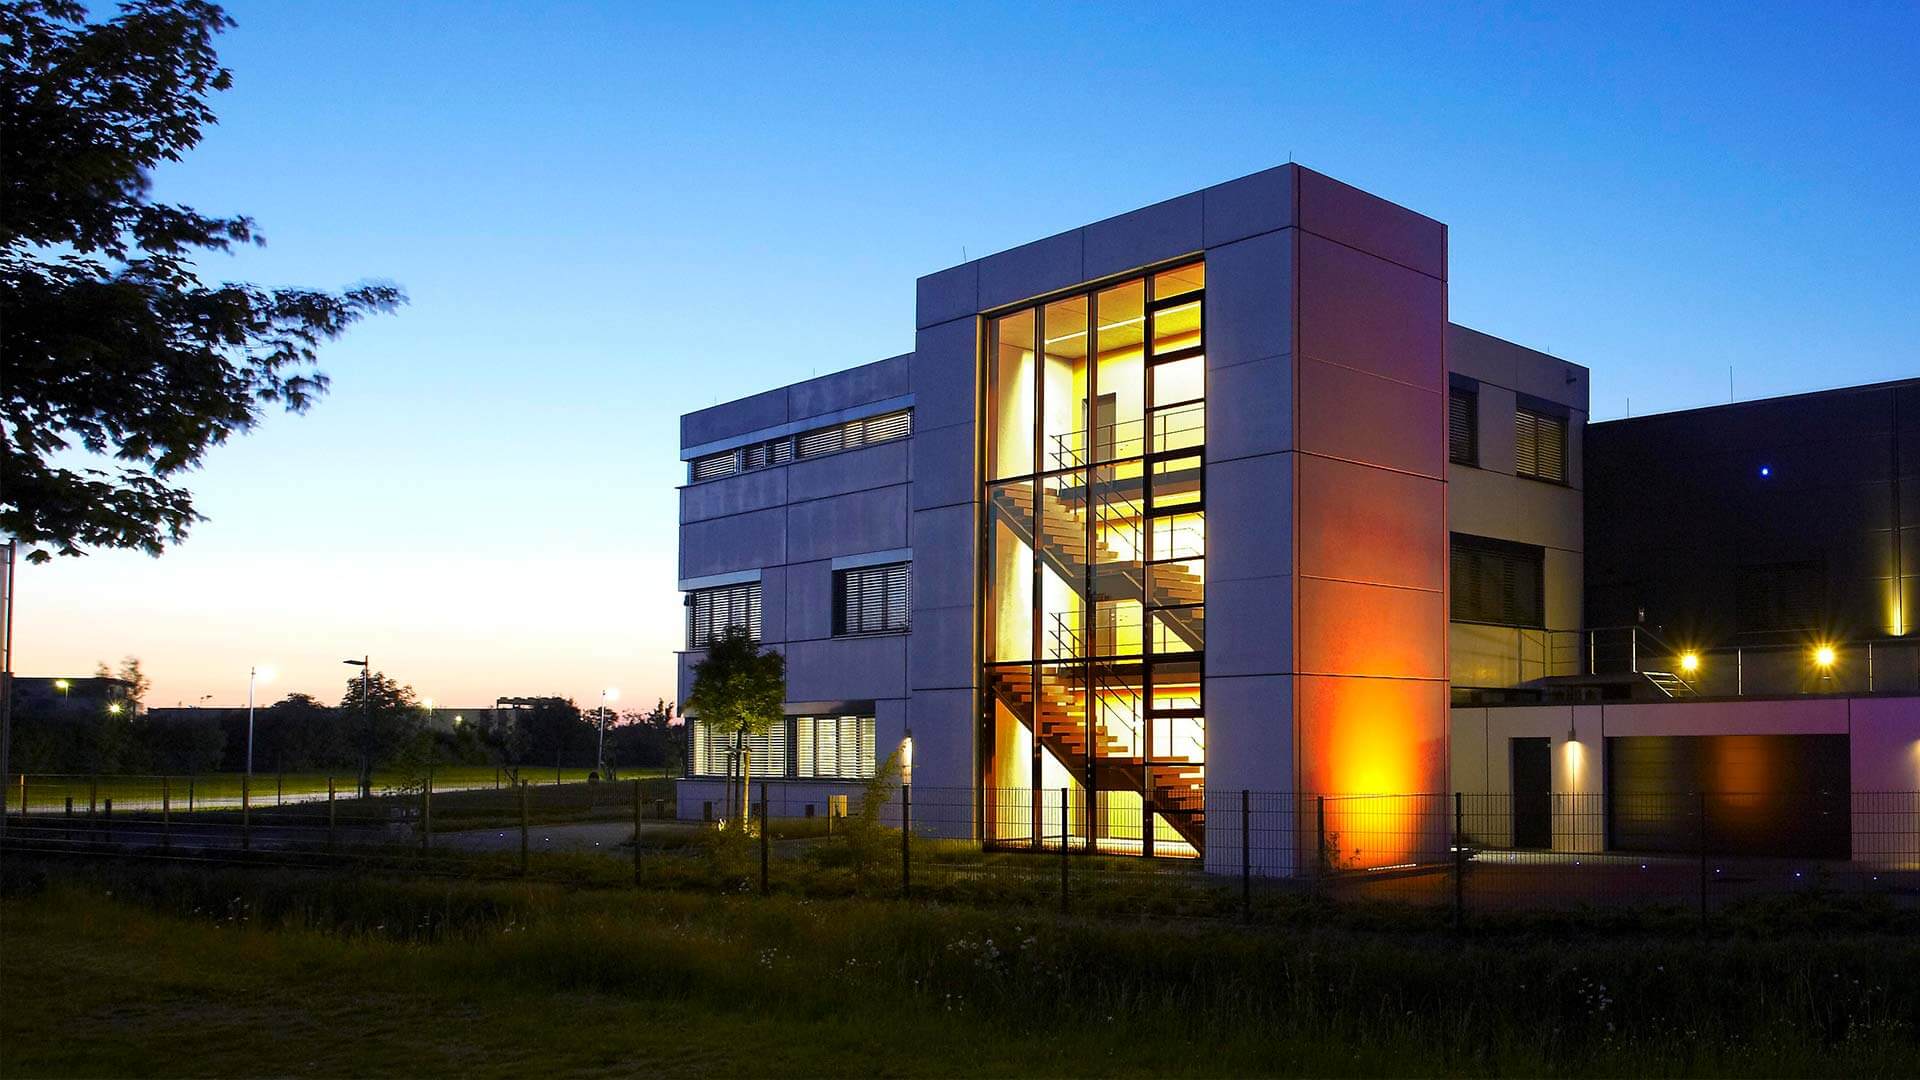 aixFOAM ljudisolering - Den toppmoderna produktionsbyggnaden i Eschweiler, Tyskland